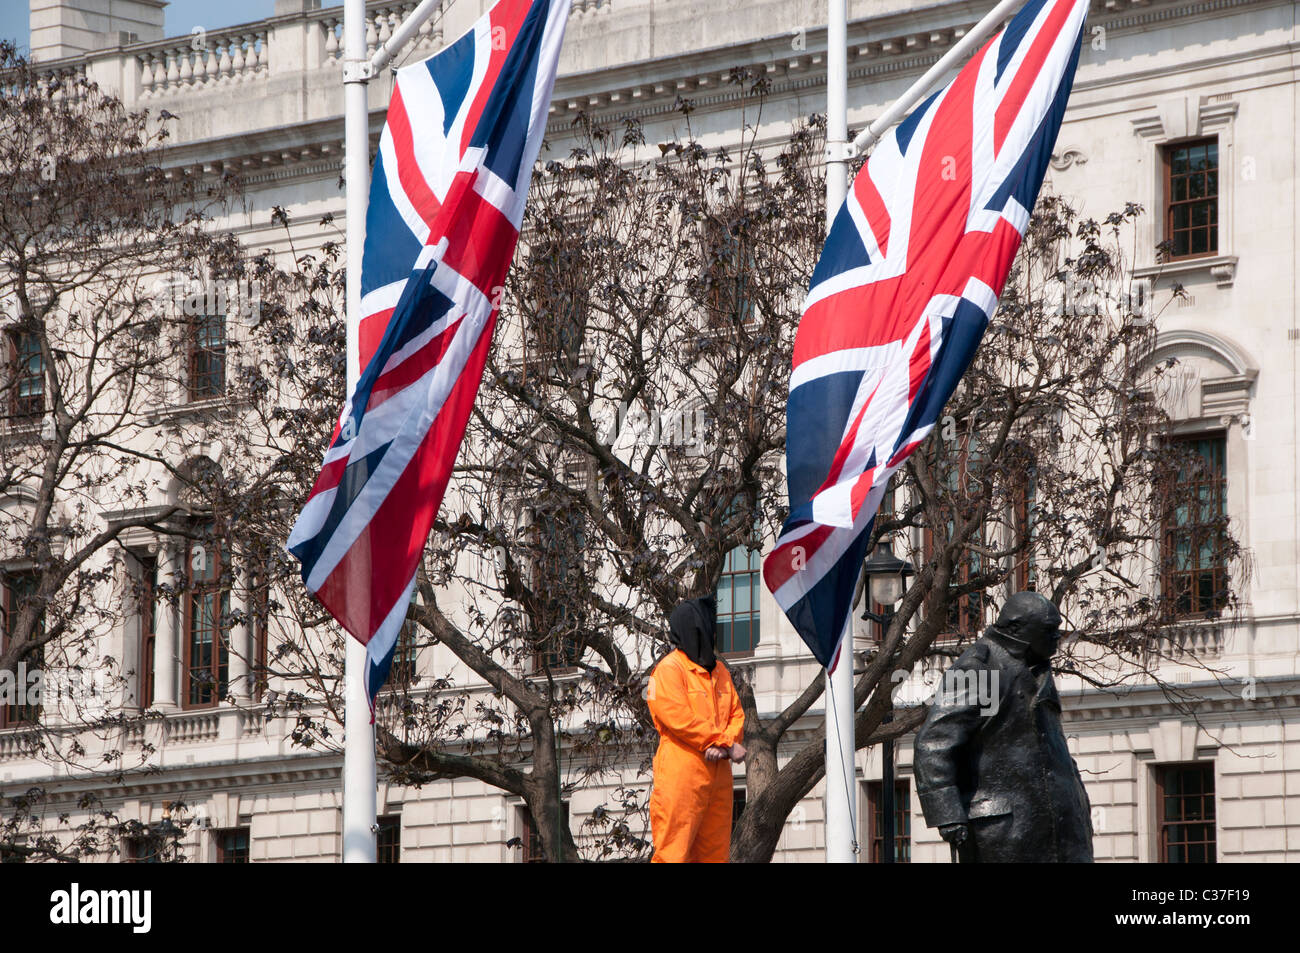 Londres, avril 2011. Manifestation devant le Parlement avec manifestant vêtu de l'uniforme de la prison orange Guantamano et Union Jacks Banque D'Images